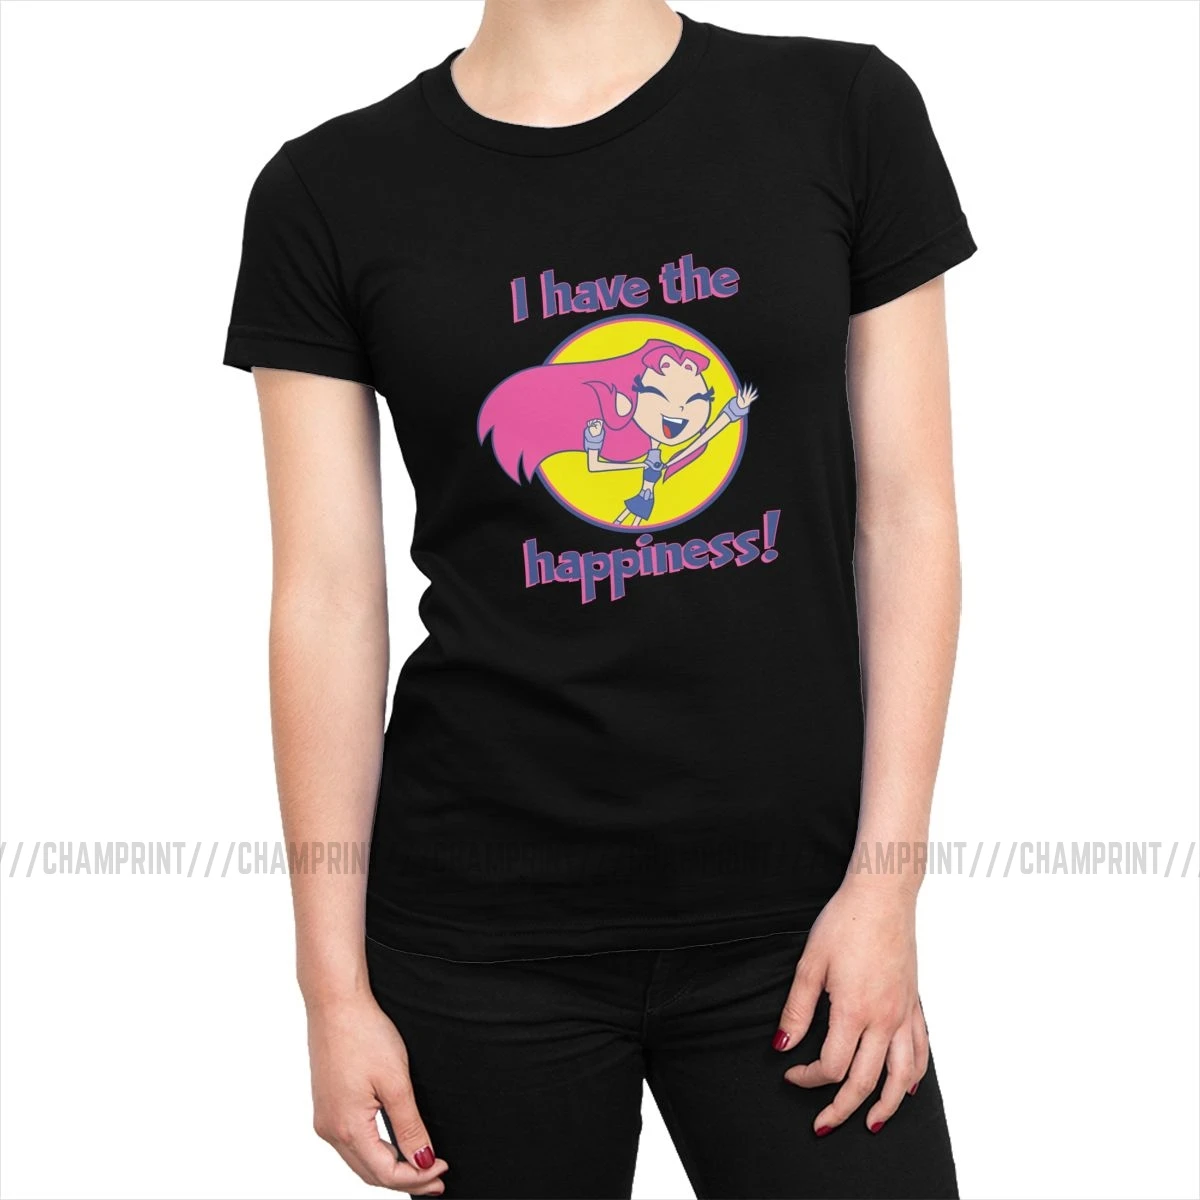 Teen Titans Go Starfire I Have The футболка с надписью Happiness женские футболки Kawaii футболки, топ, забавная Женская одежда с графикой - Цвет: Черный